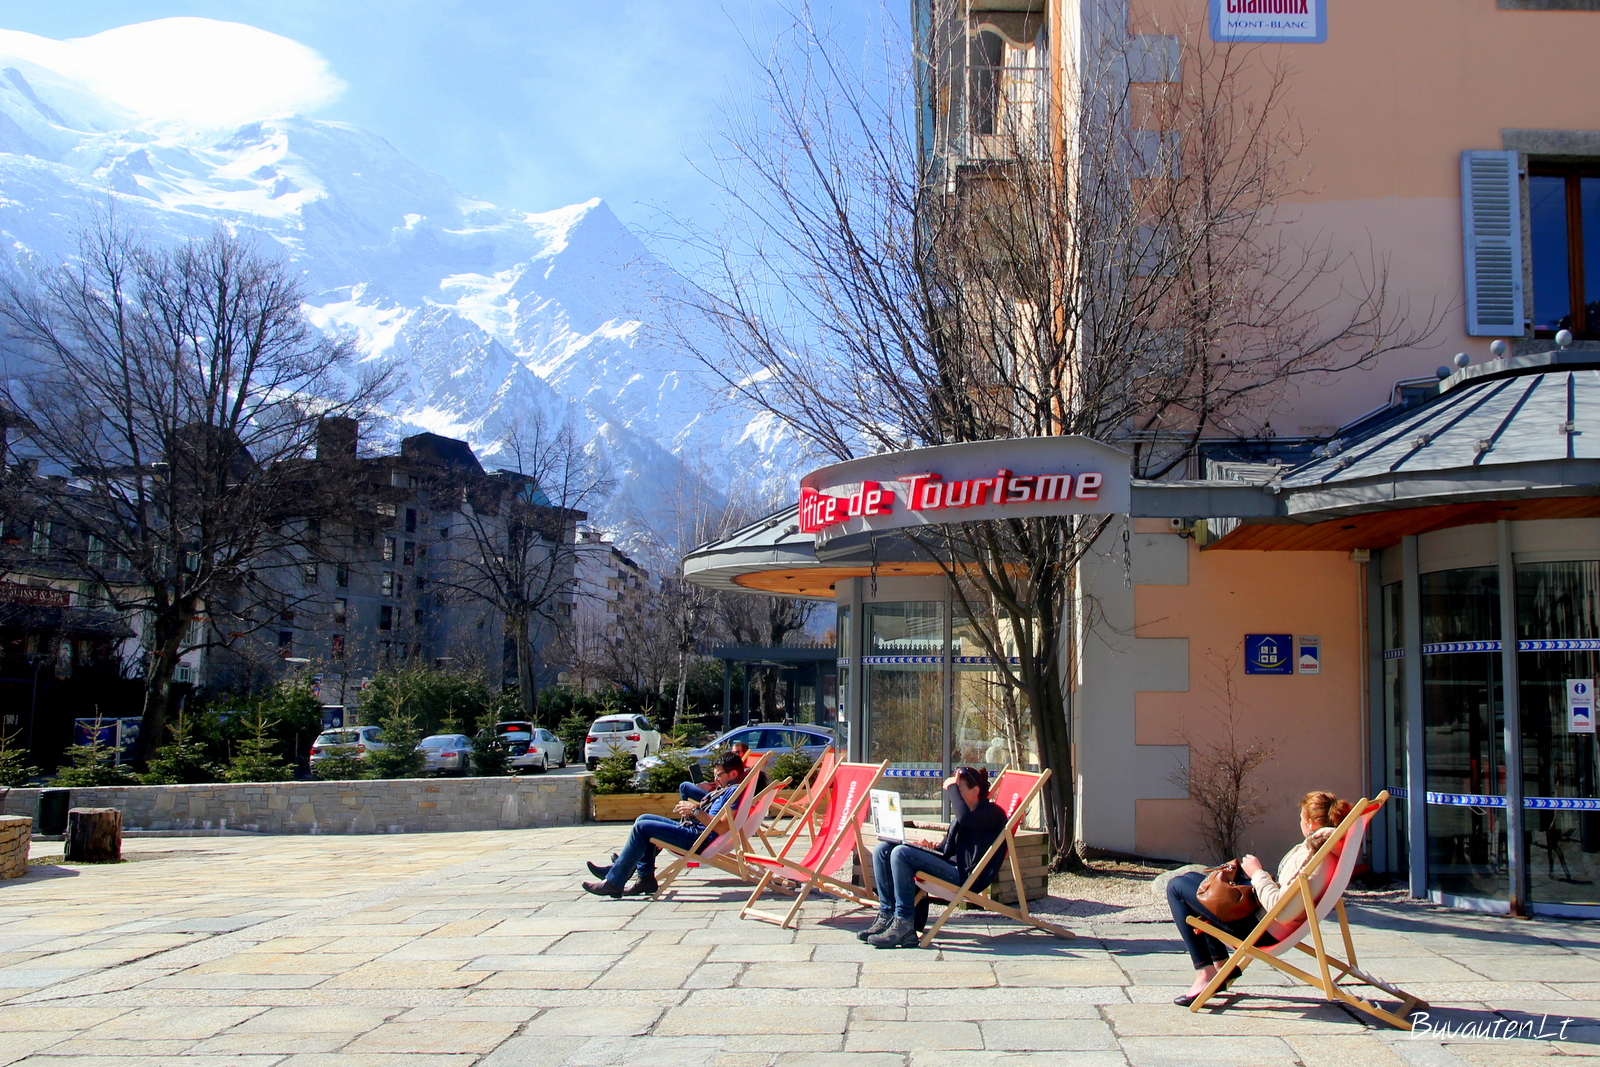 Turistai šalia turizmo biuro gaudo pavasario saulę